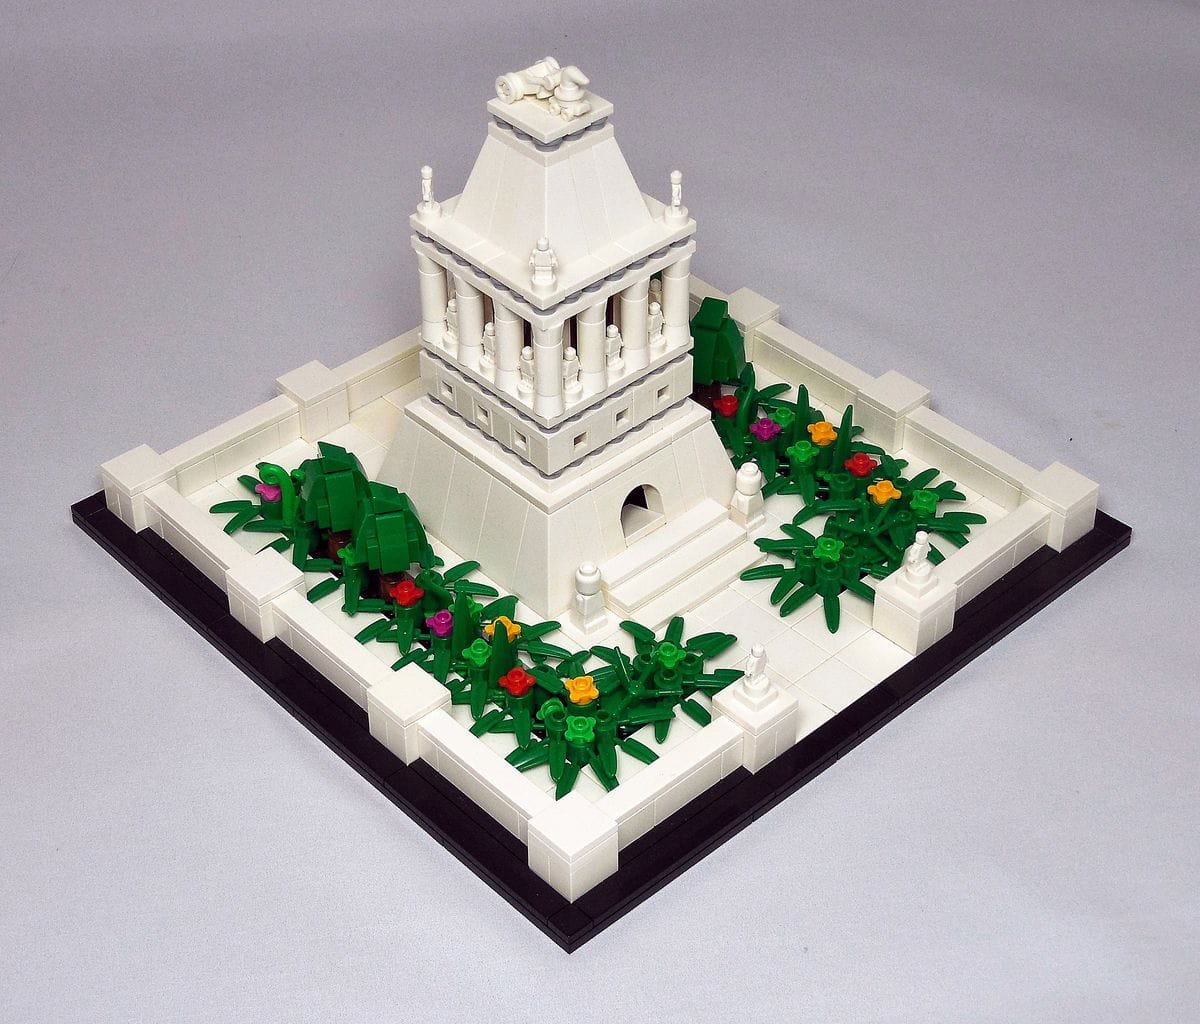 Concurs Microscale Old City – Creatia 3: Mausoleum at Halicarnassus